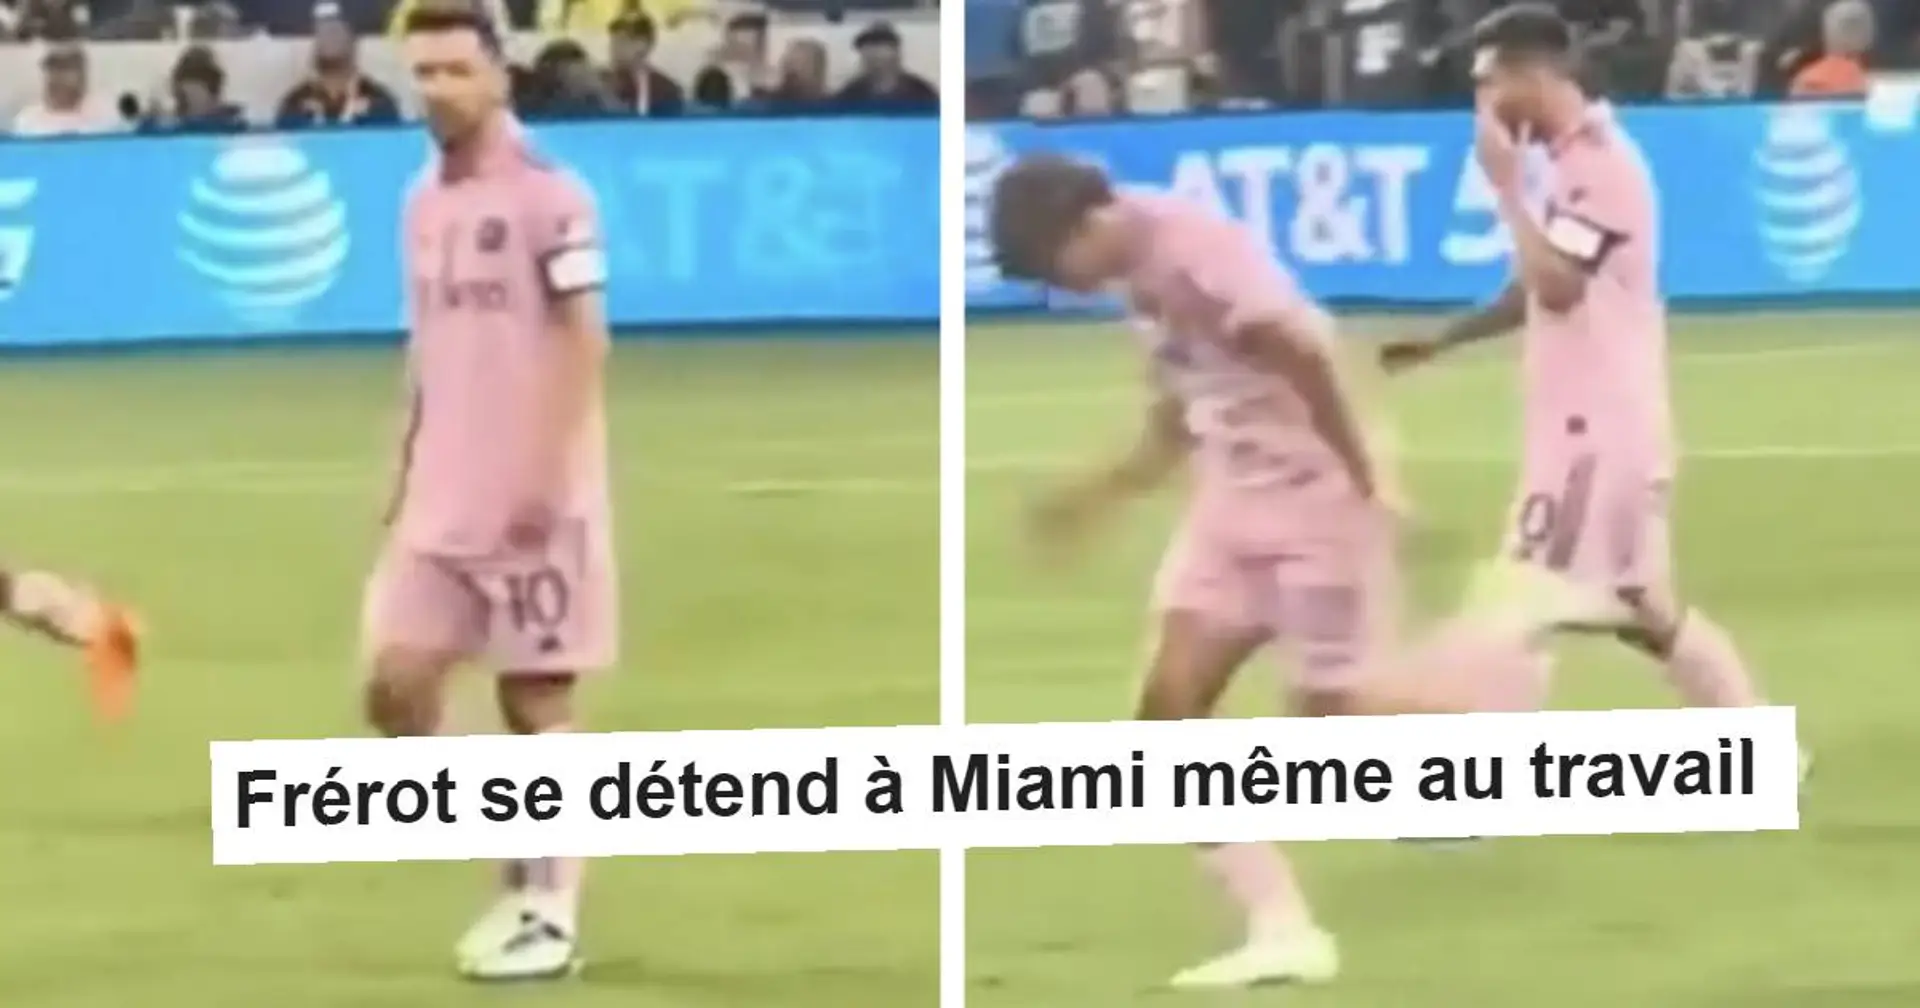 Le mouvement de Messi avant le dernier but de Miami devient viral. Ca devrait agacer les fans du PSG